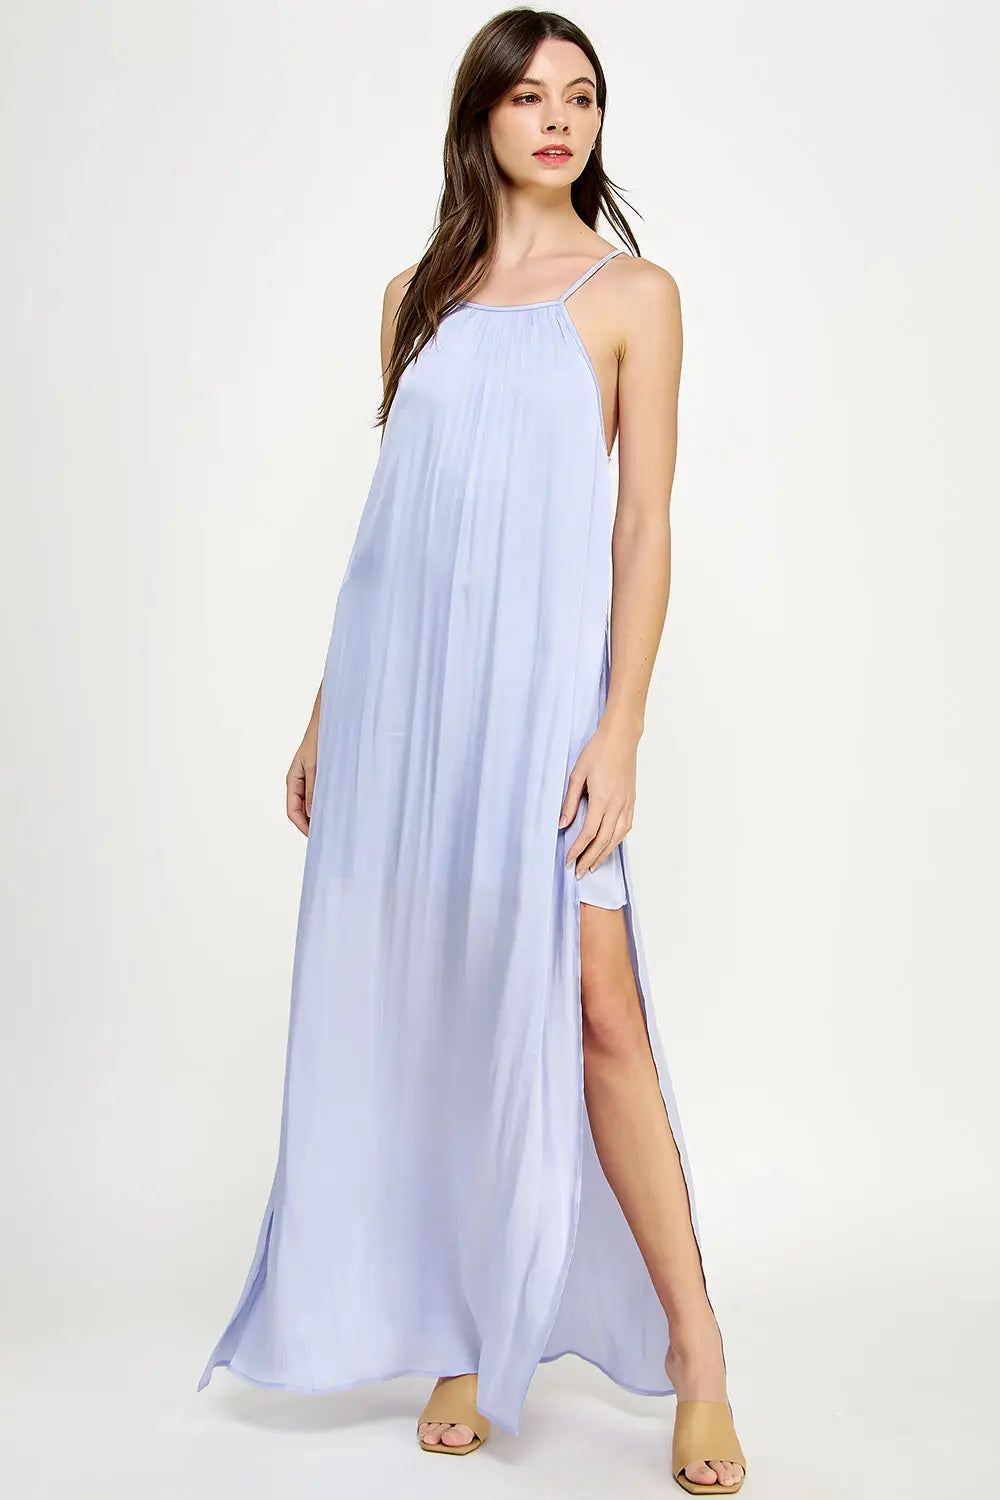 Minimalist Lavender Satin Maxi Dress – Lilla Cavallo